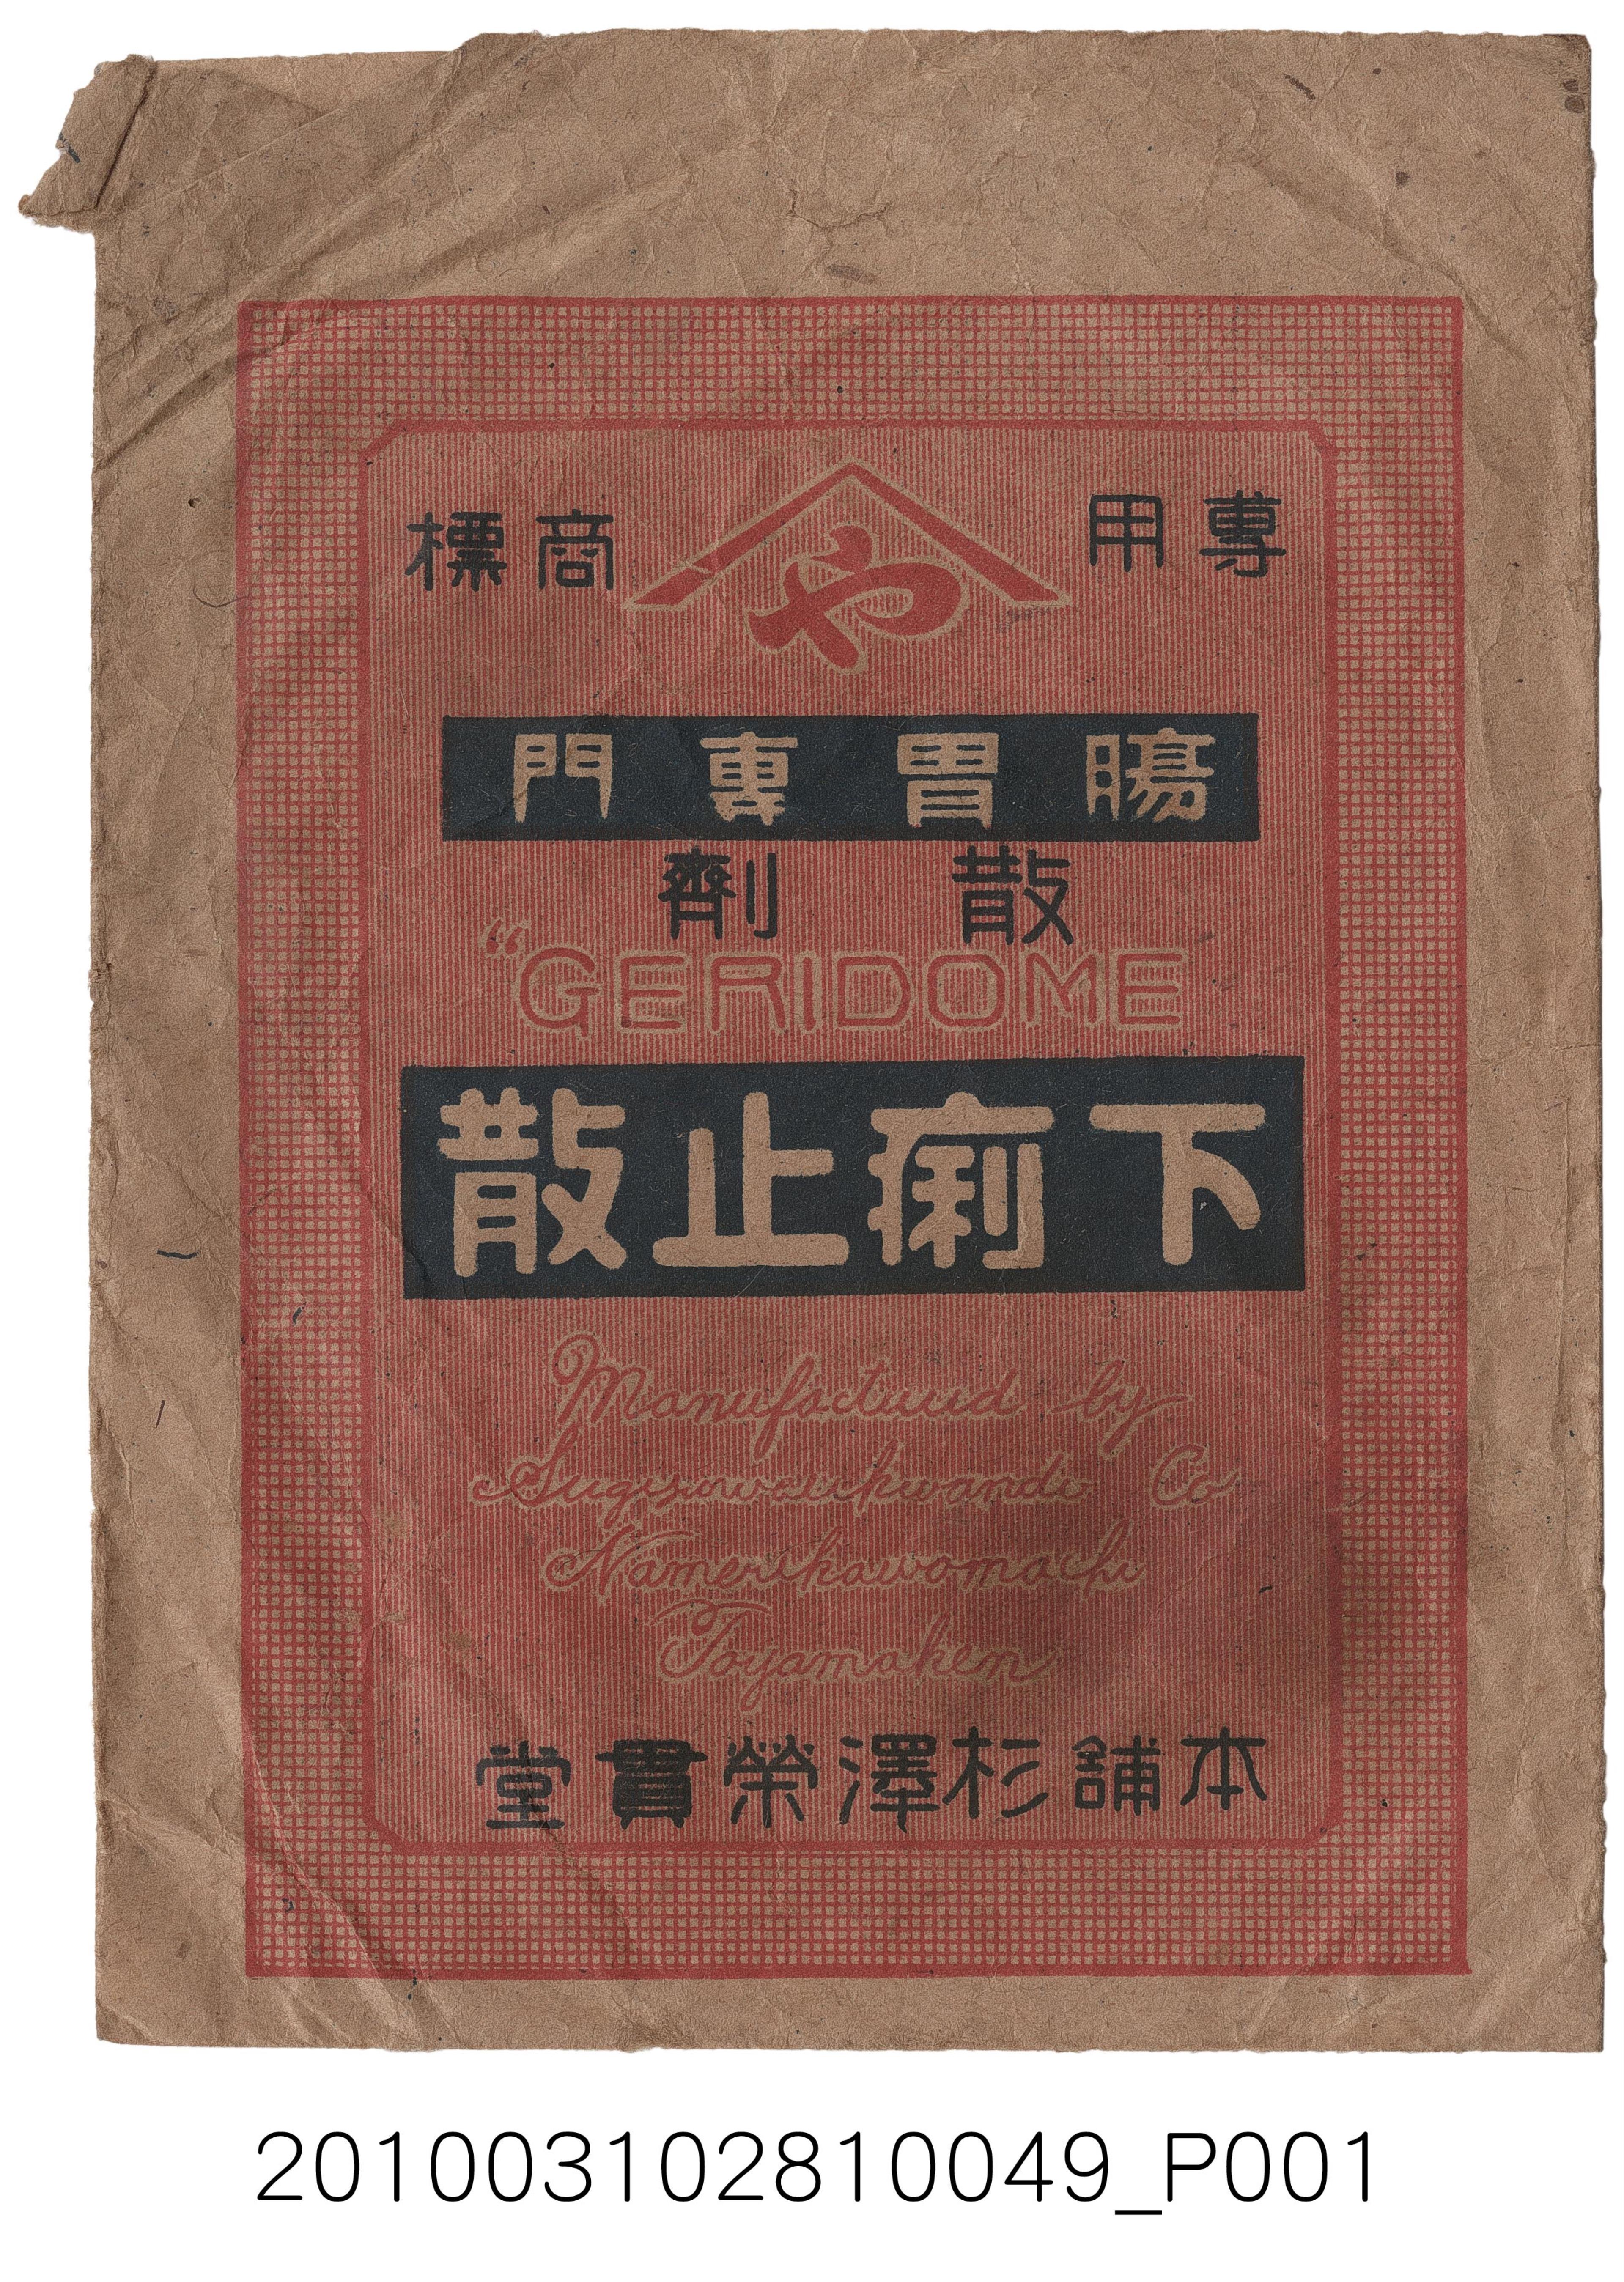 日本杉澤榮貫堂製下痢止散藥品包裝袋 (共2張)